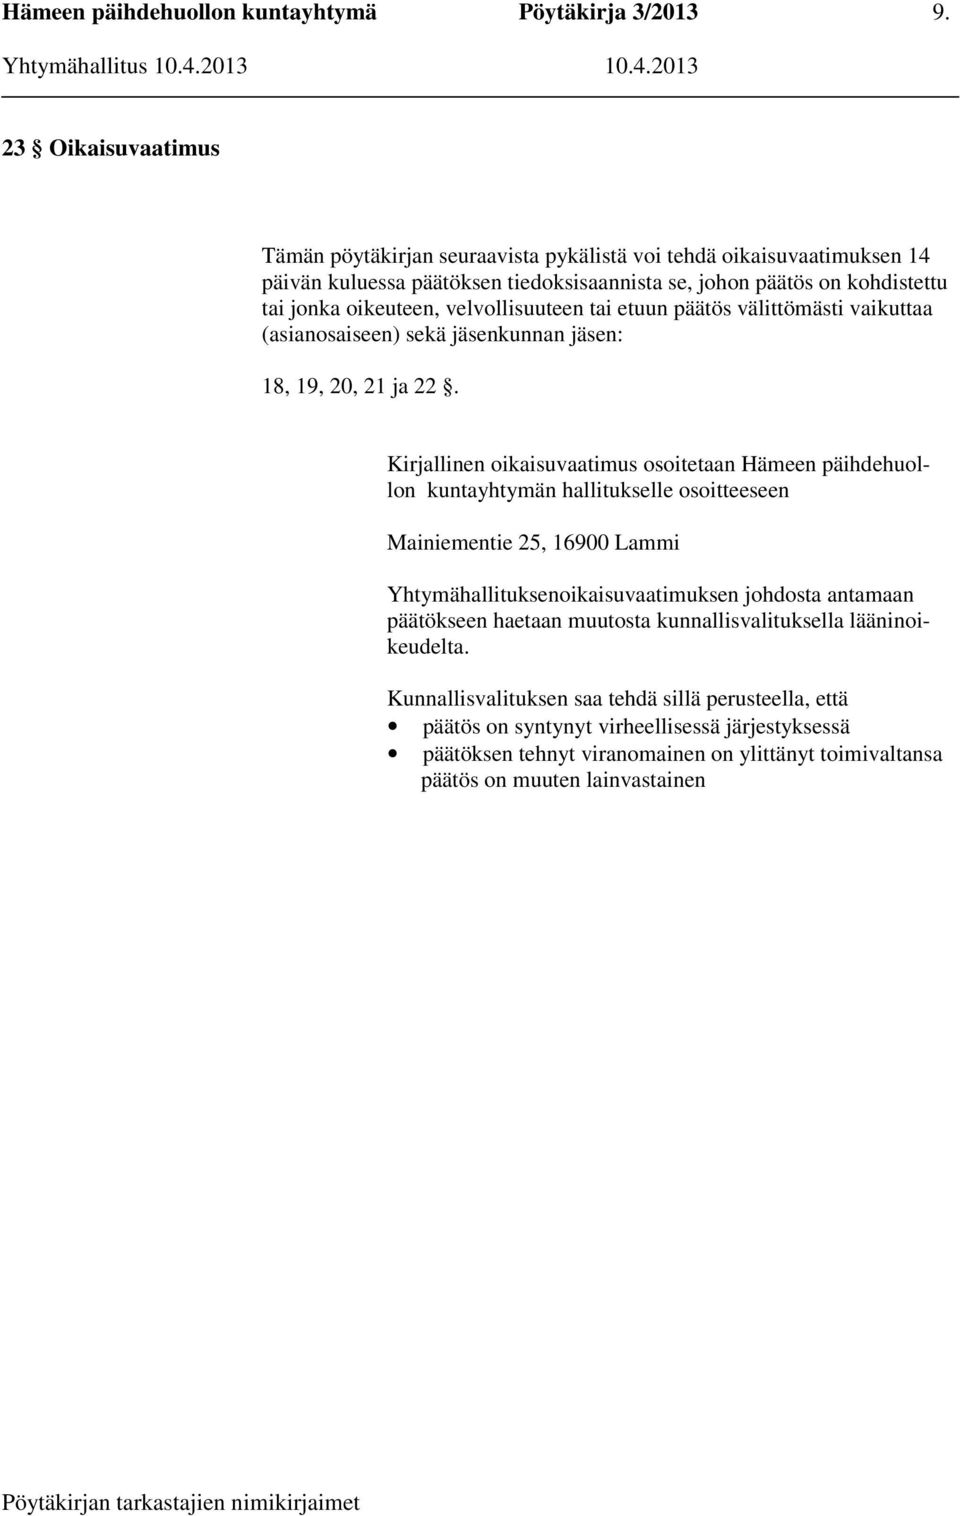 Kirjallinen oikaisuvaatimus osoitetaan Hämeen päihdehuollon kuntayhtymän hallitukselle osoitteeseen Mainiementie 25, 16900 Lammi Yhtymähallituksenoikaisuvaatimuksen johdosta antamaan